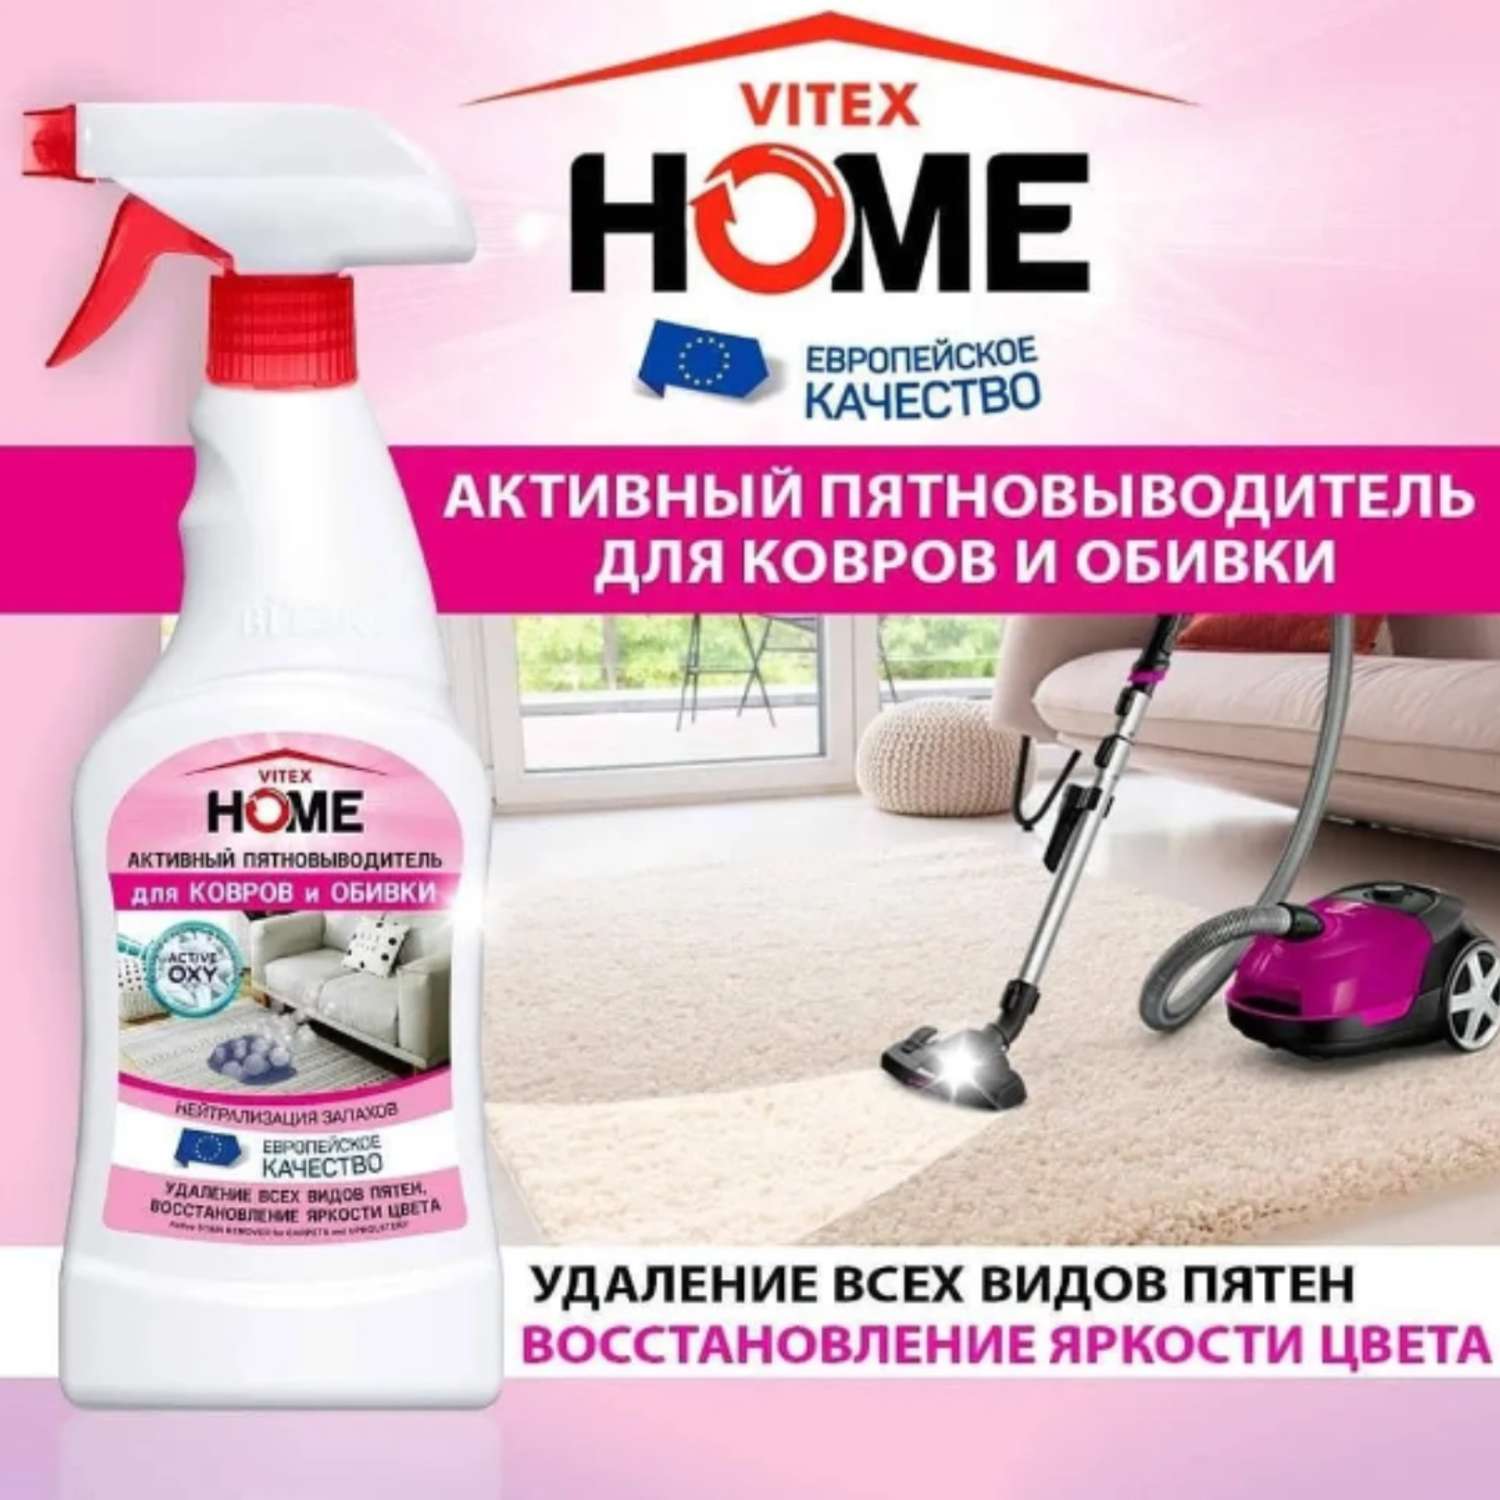 Пятновыводитель ВИТЭКС для мебели vitex home чистящее средство для ковров и обивки 500мл - фото 2